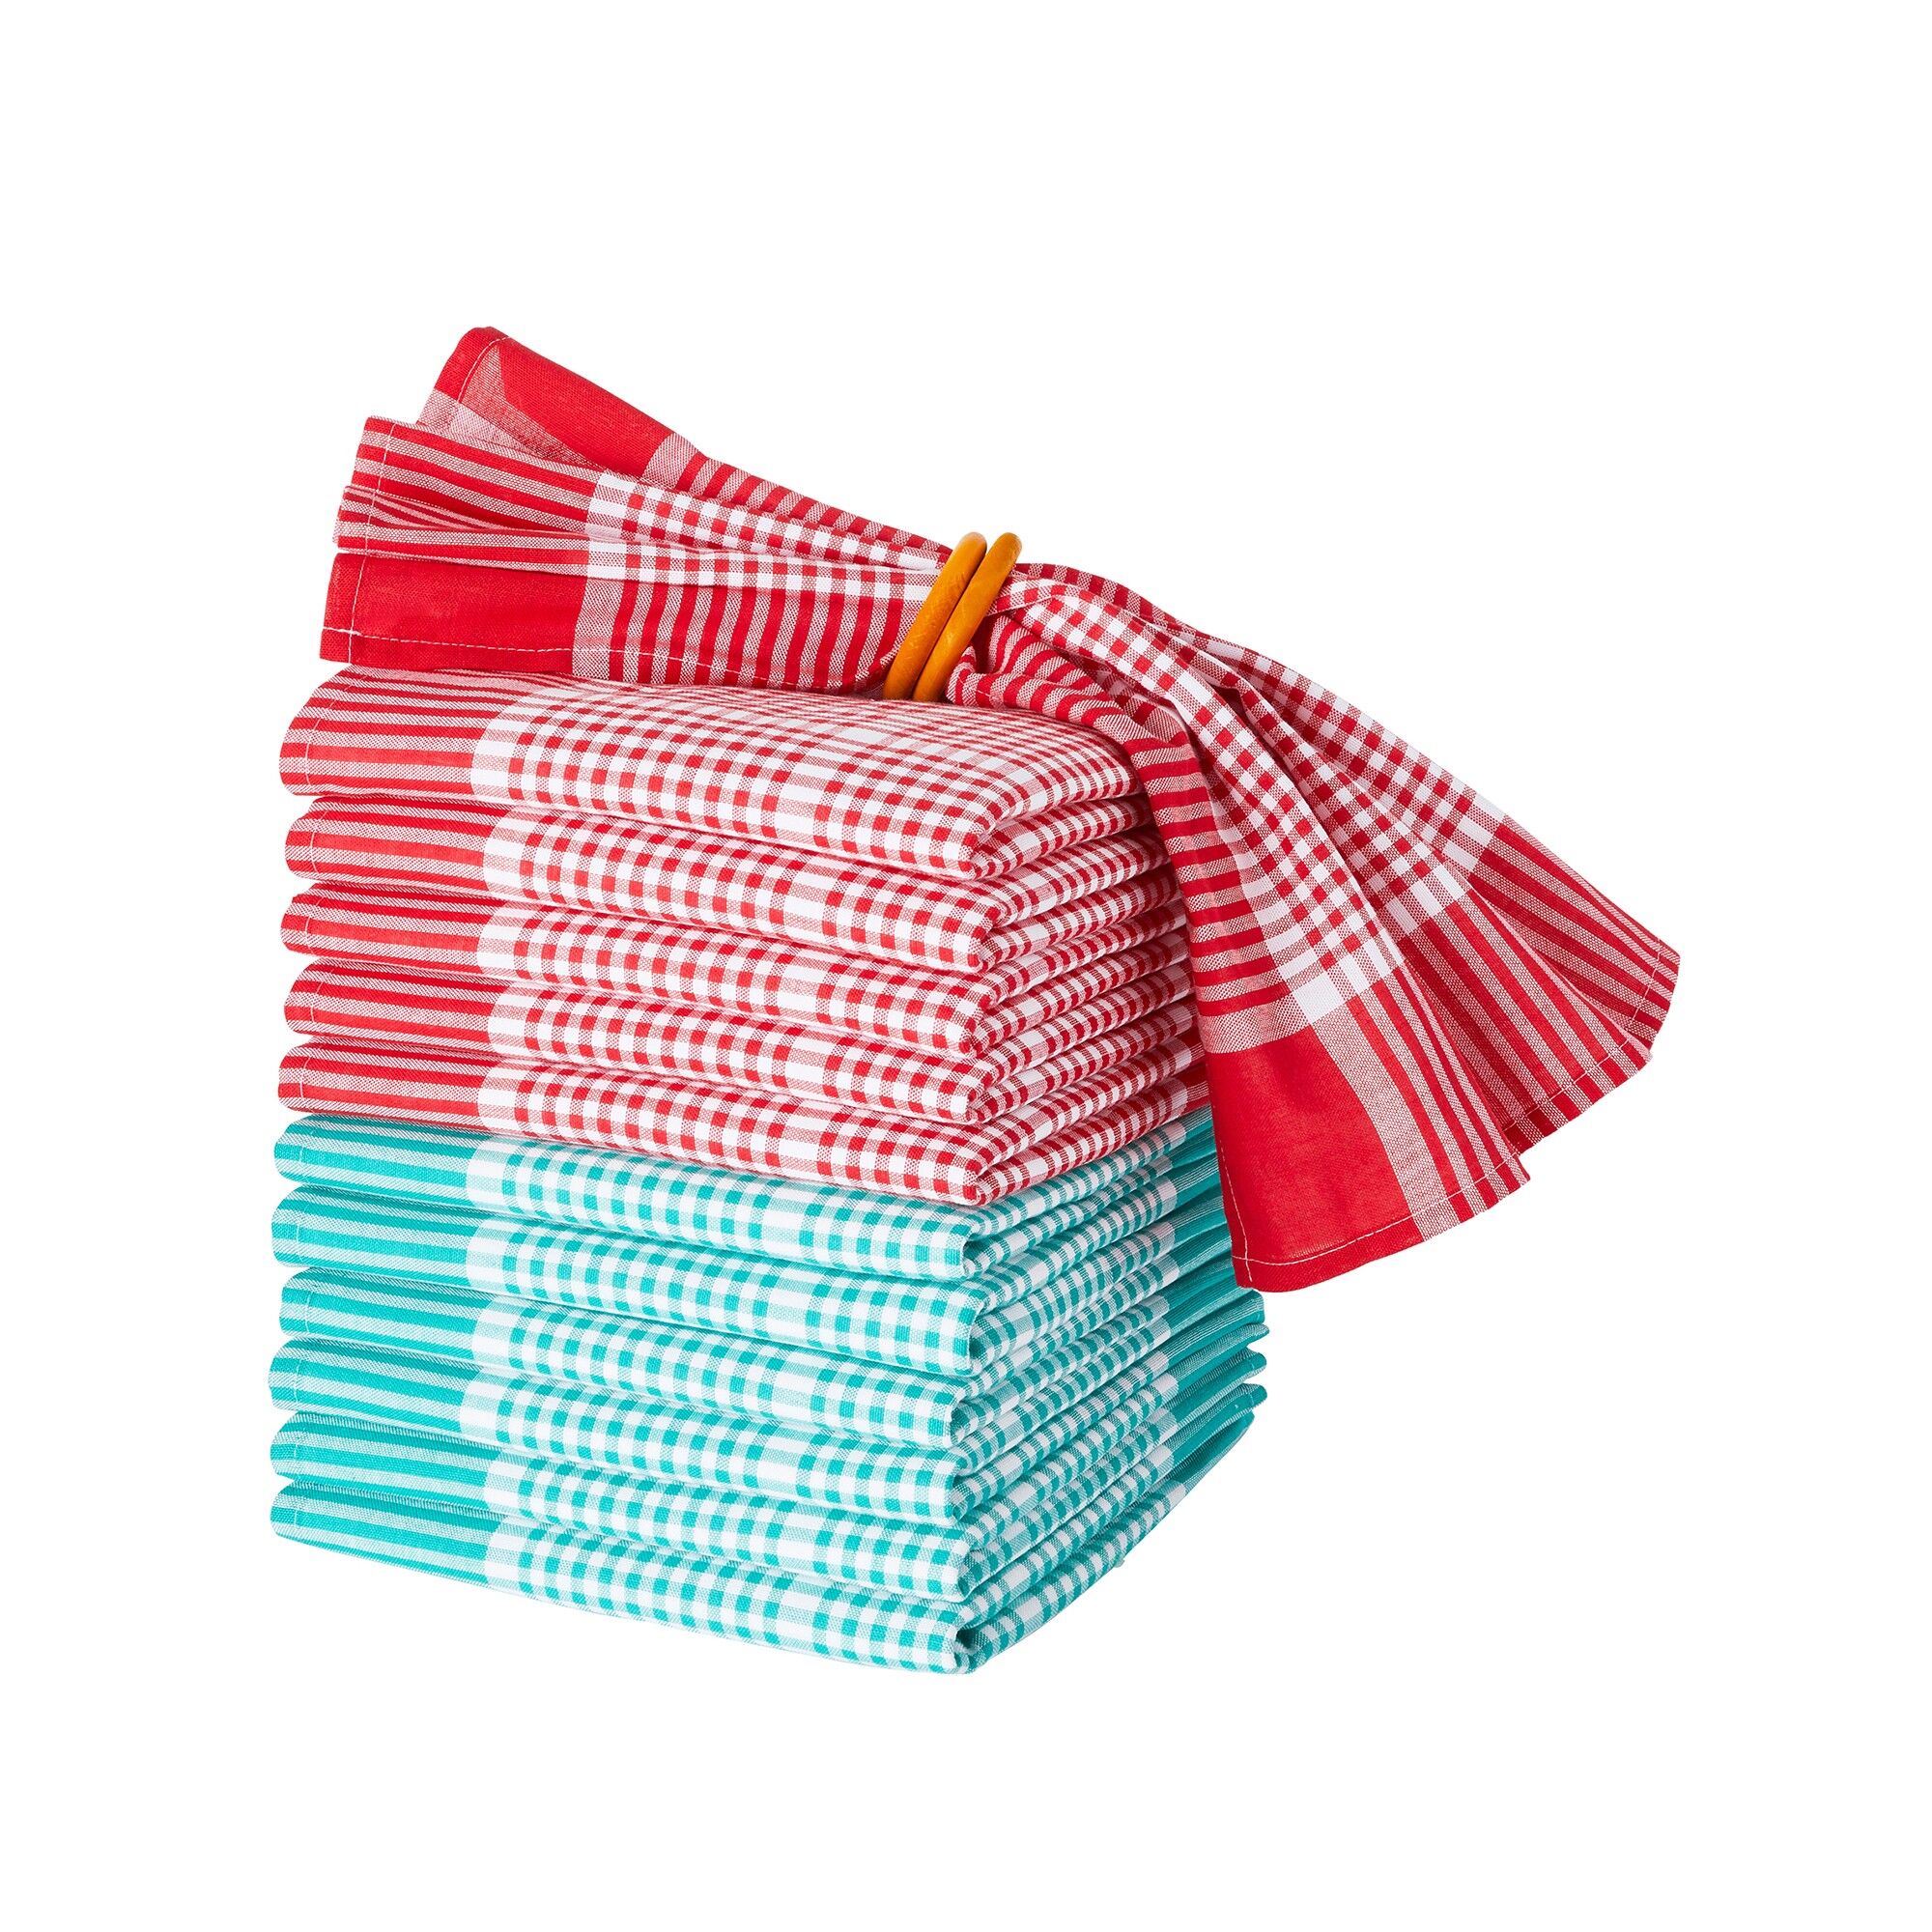 Blancheporte Serviette de table carreaux normand - lots - Blancheporte  - Turquoise - Size: Lot de 6 serviettes de table: 45x45cm - Woman